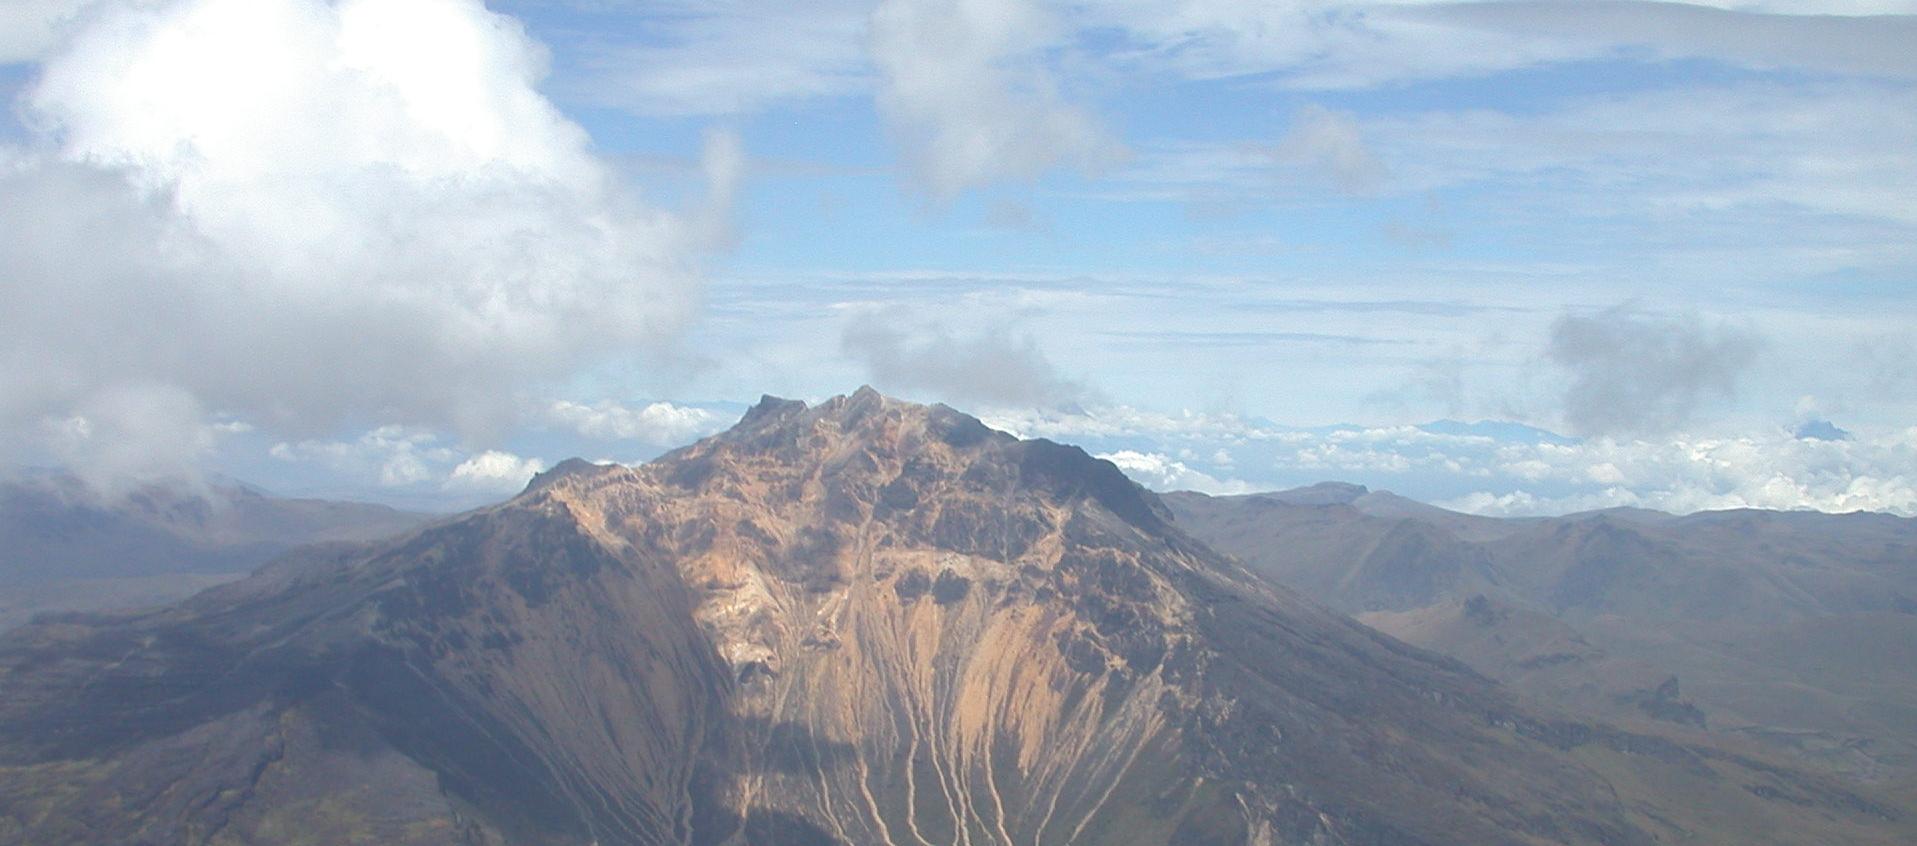 Volcán Nevado del Ruiz captado el martes.